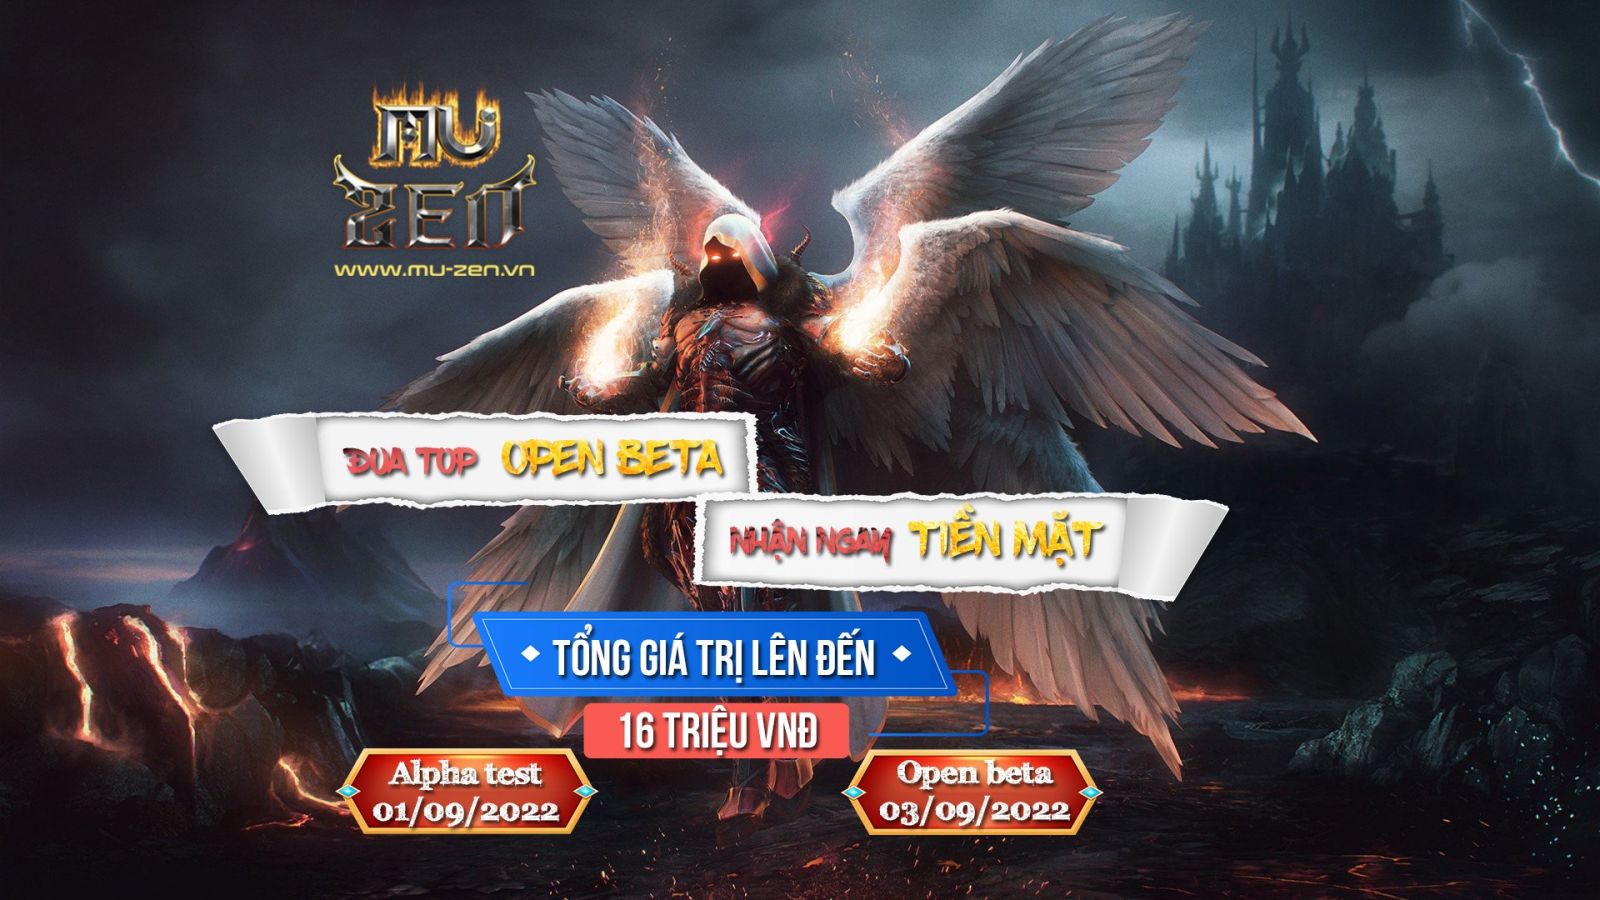 Mu zen – Ra mắt máy chủ mới Arena Đua top Open beta nhận phần thưởng tổng giá trị lên đến 16 triệu VNĐ chuyển thẳng vào AMT